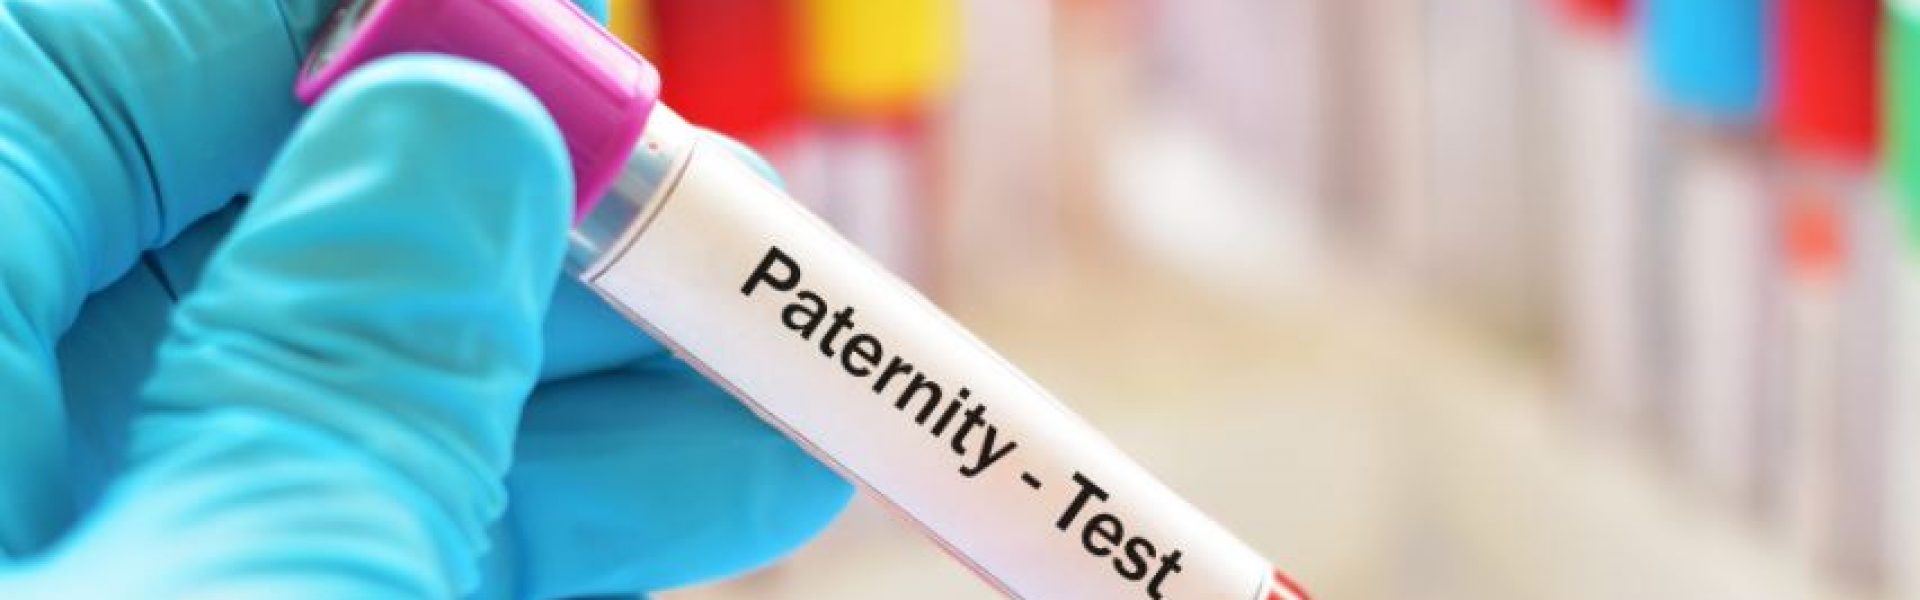 Test de paternité prix